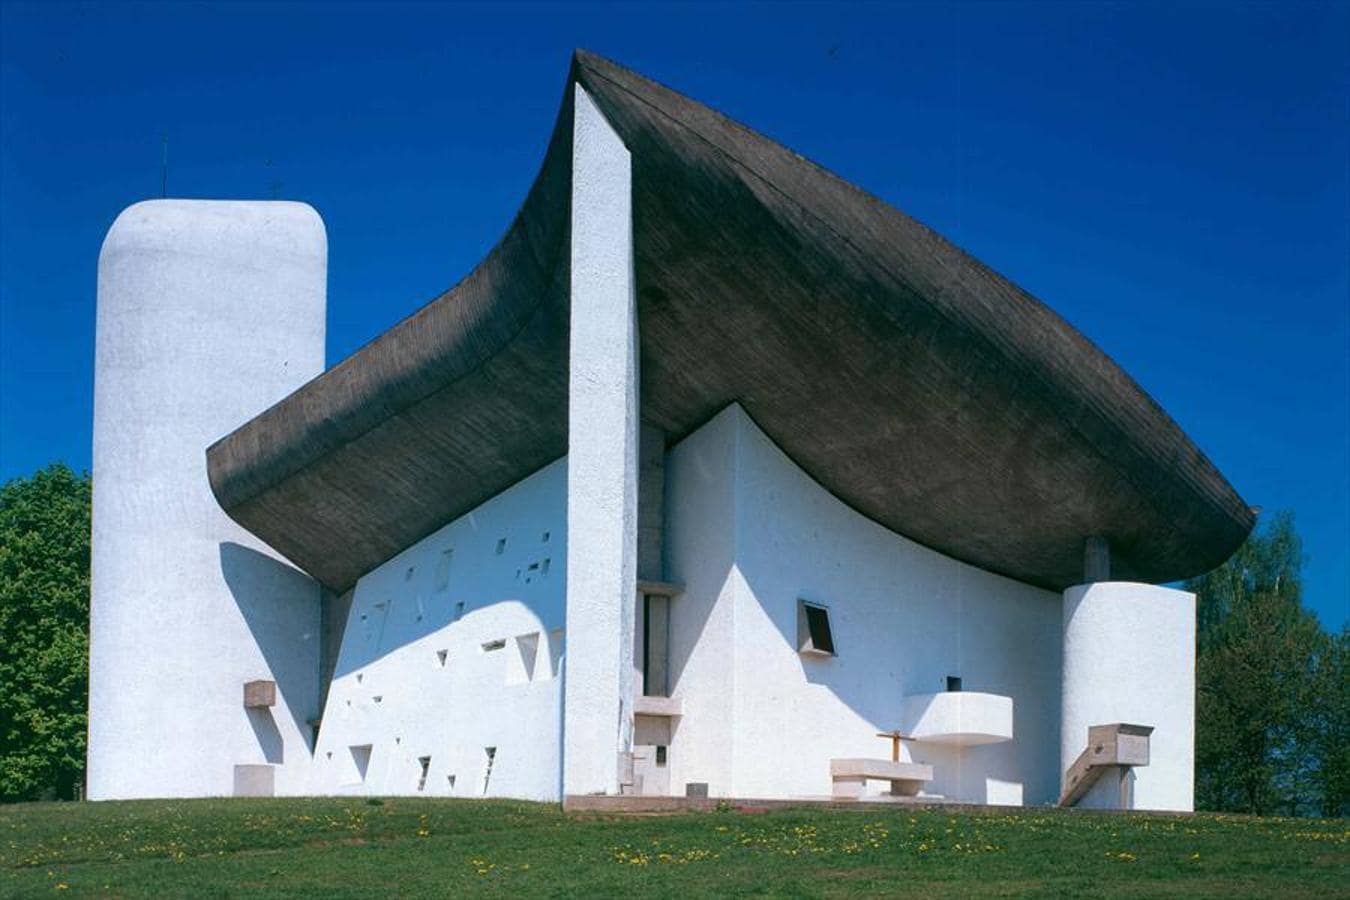 La capilla de Notre Dame du Haut en Ronchamp, Francia. 1950-1955